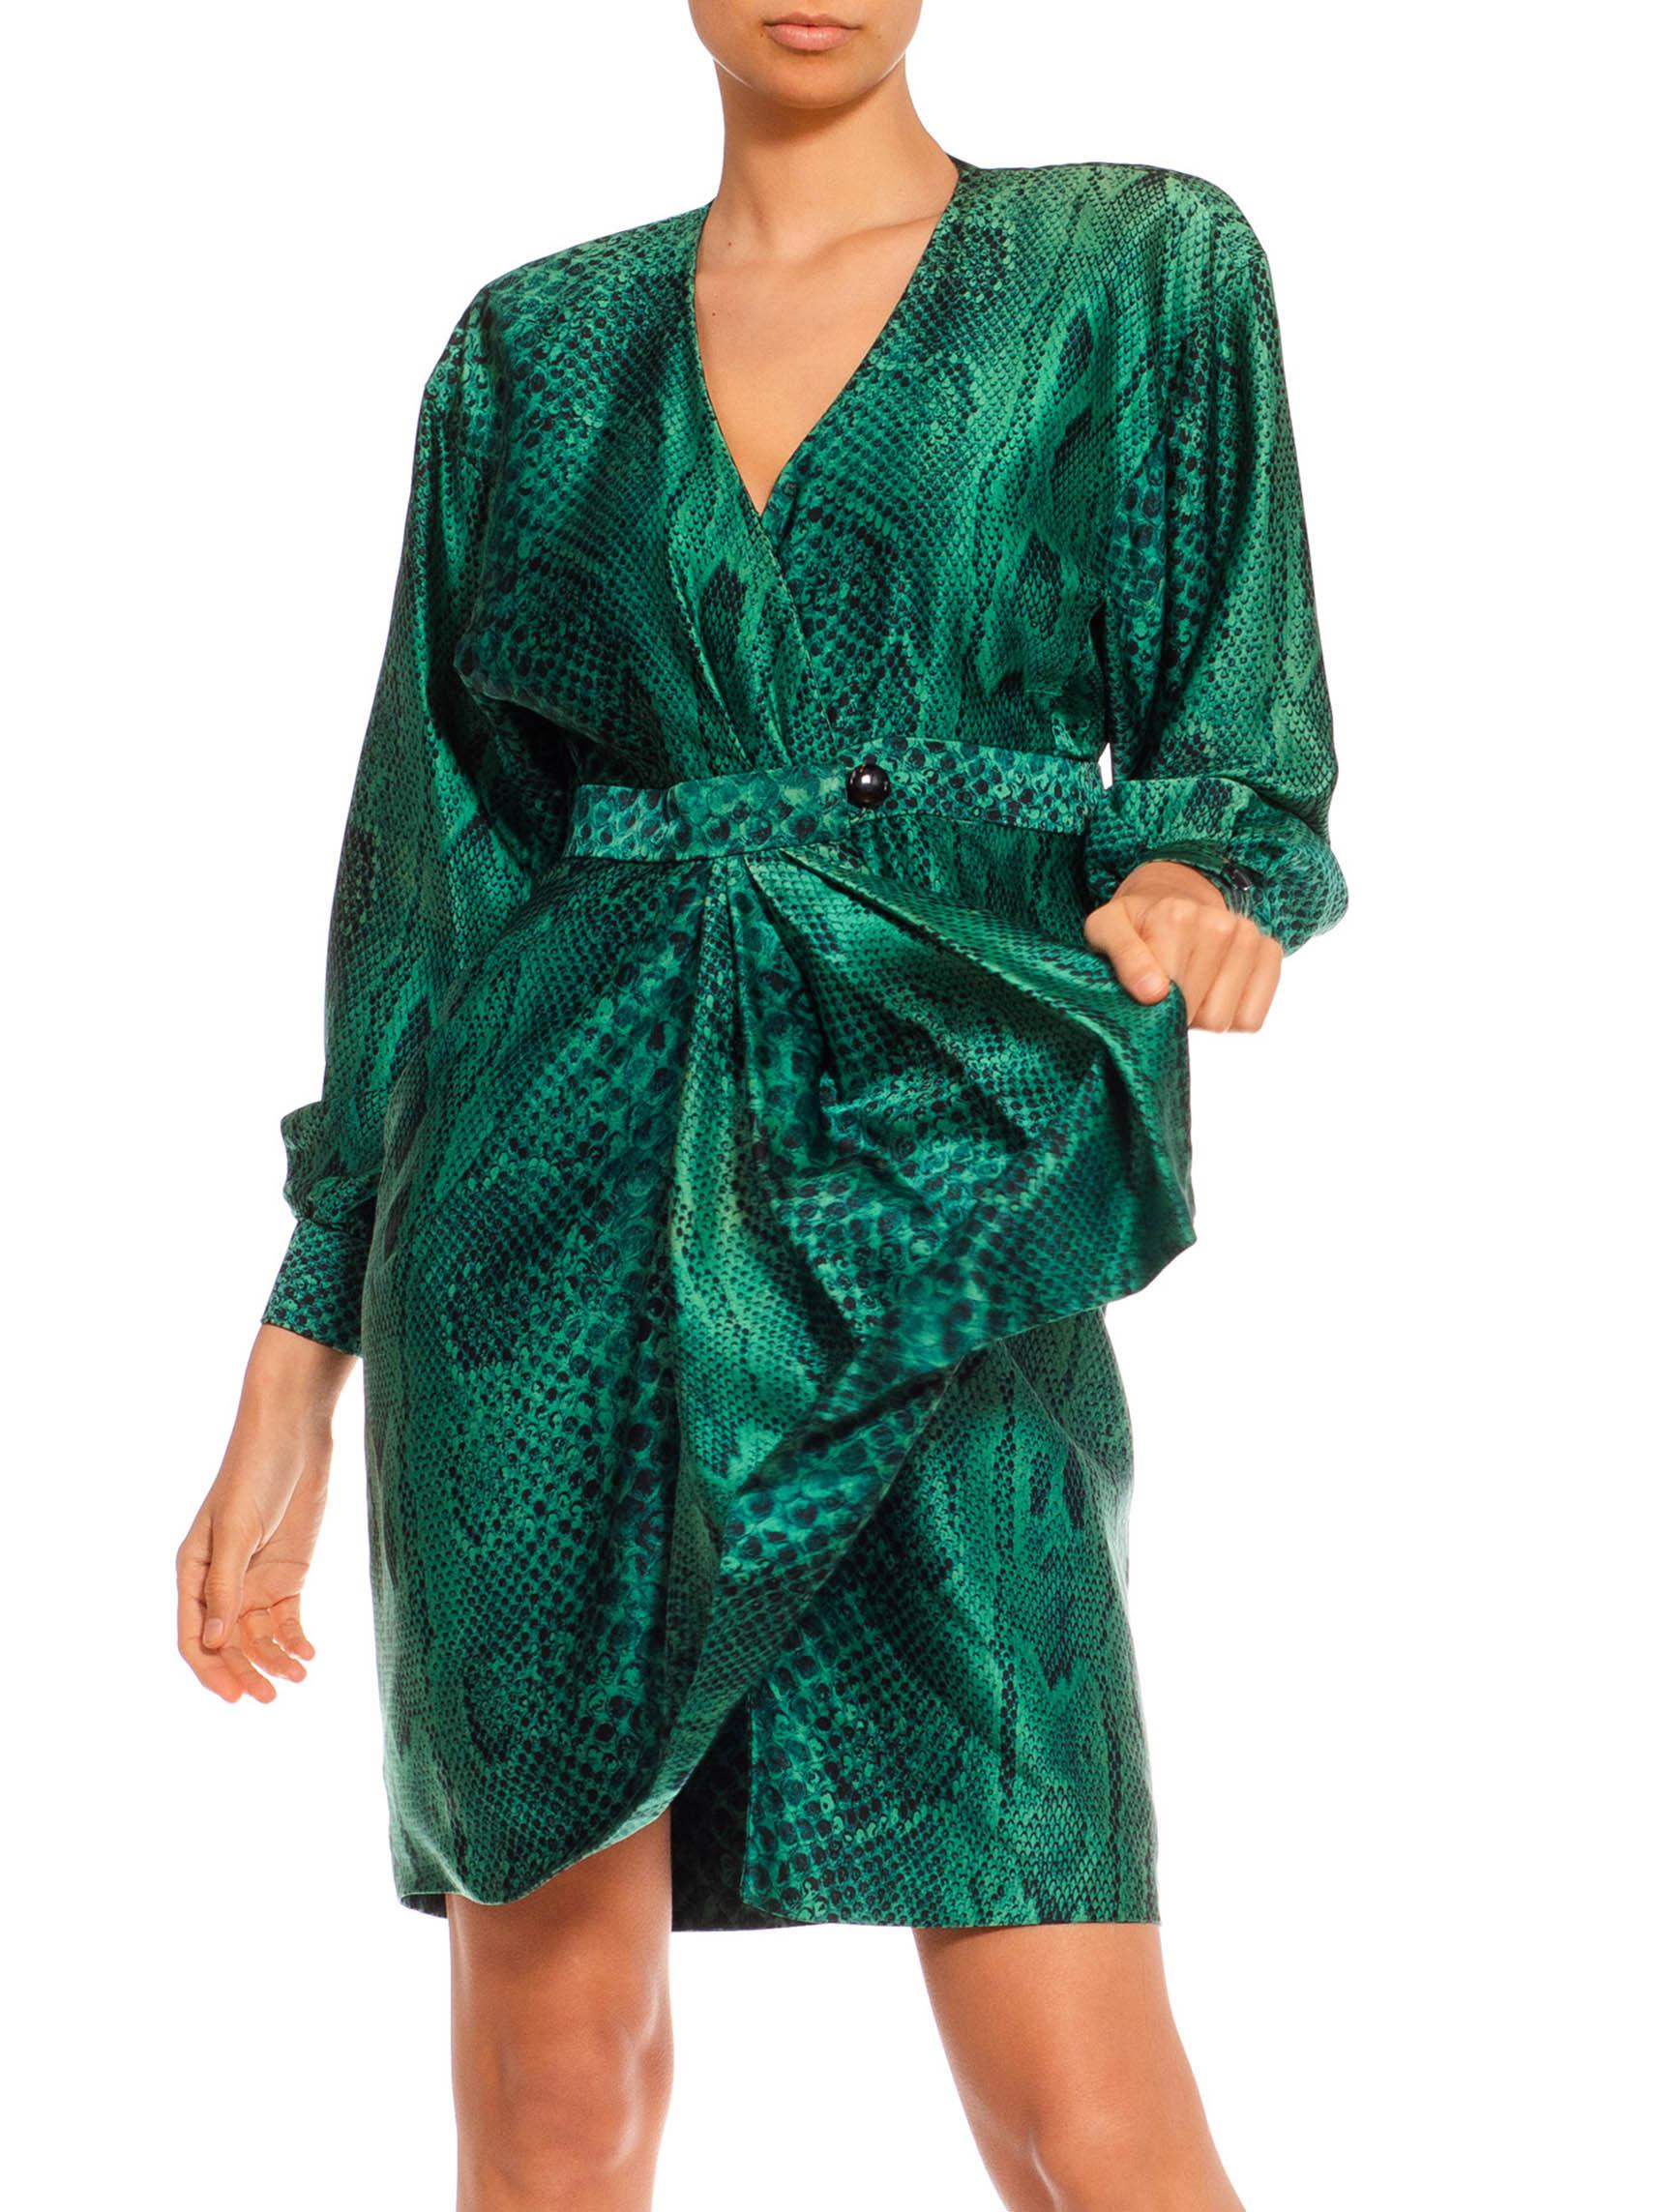 green snake dress